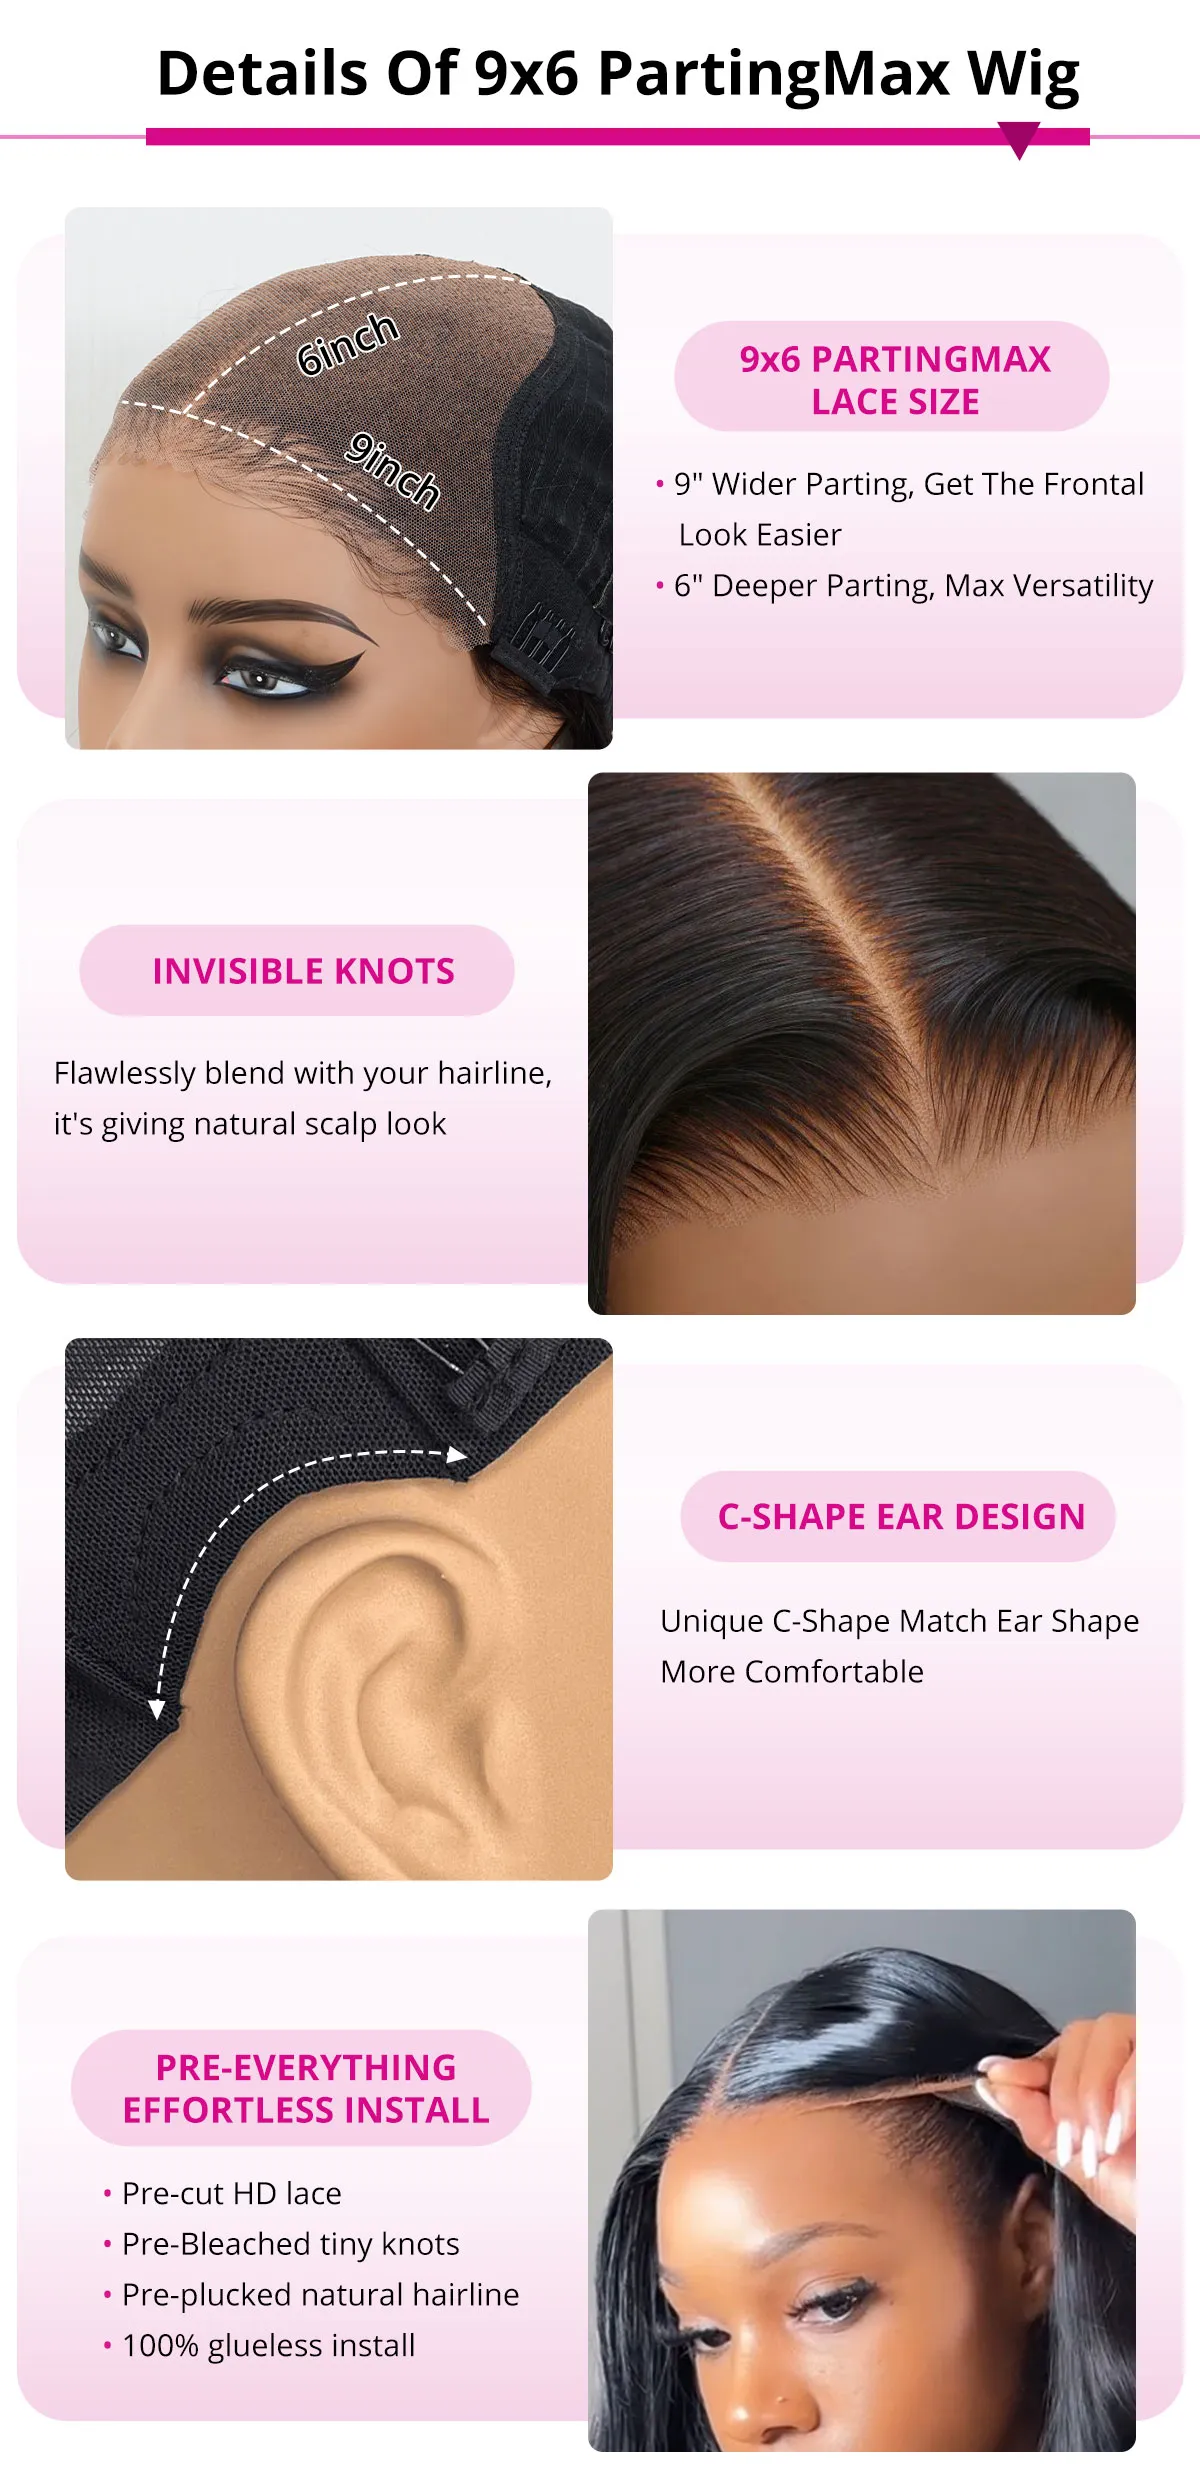 Tinashe hair parting max wig details